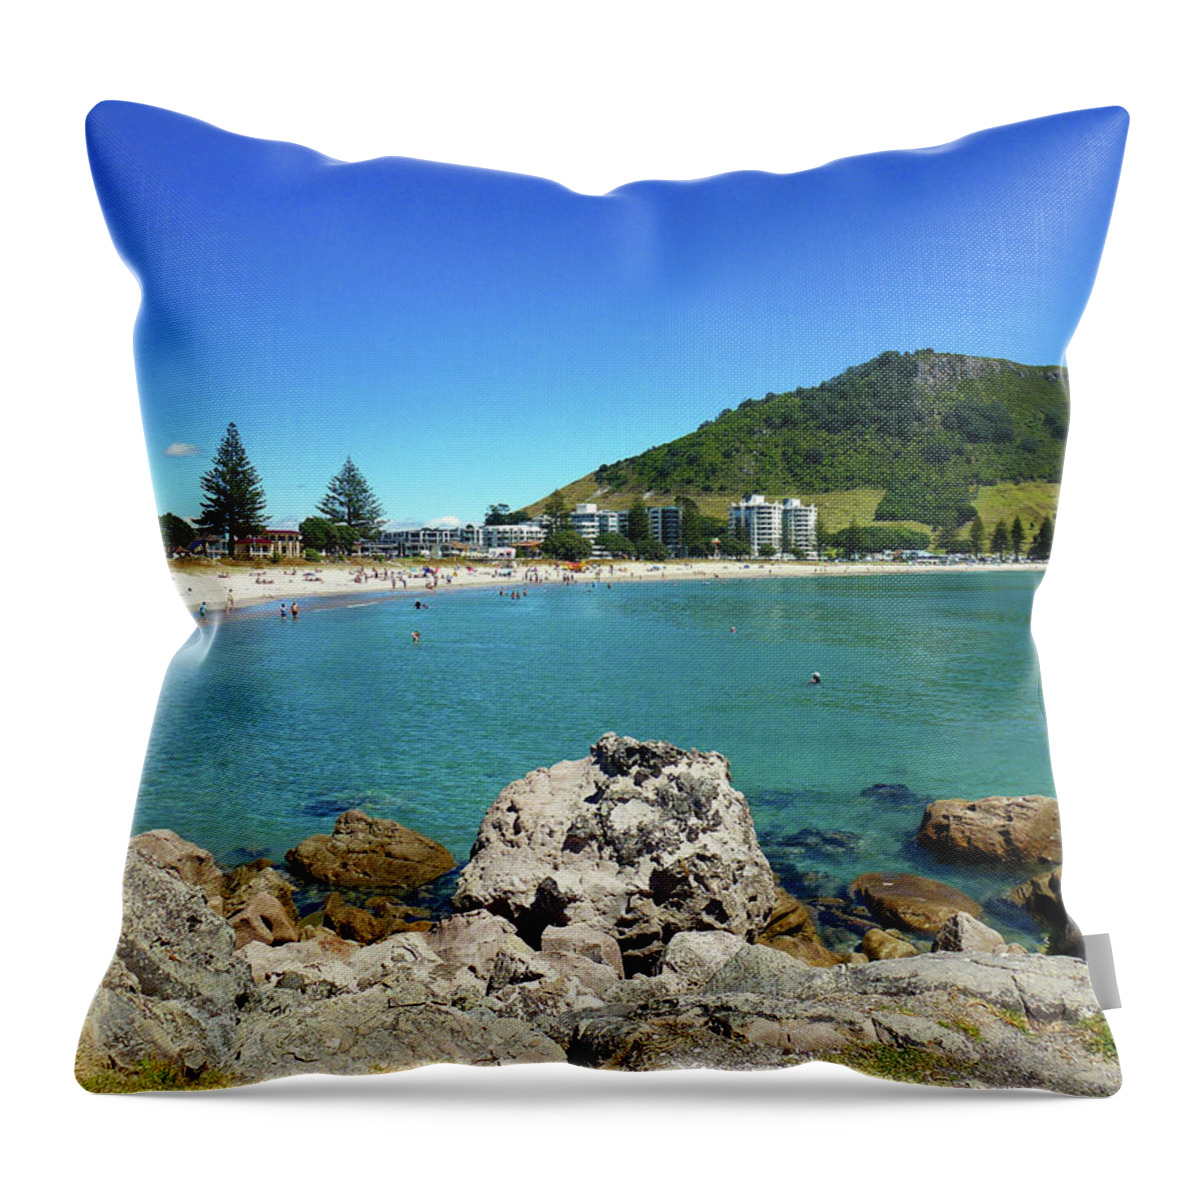 Mount Maunganui Throw Pillow featuring the photograph Mount Maunganui Beach 8 - Tauranga New Zealand by Selena Boron